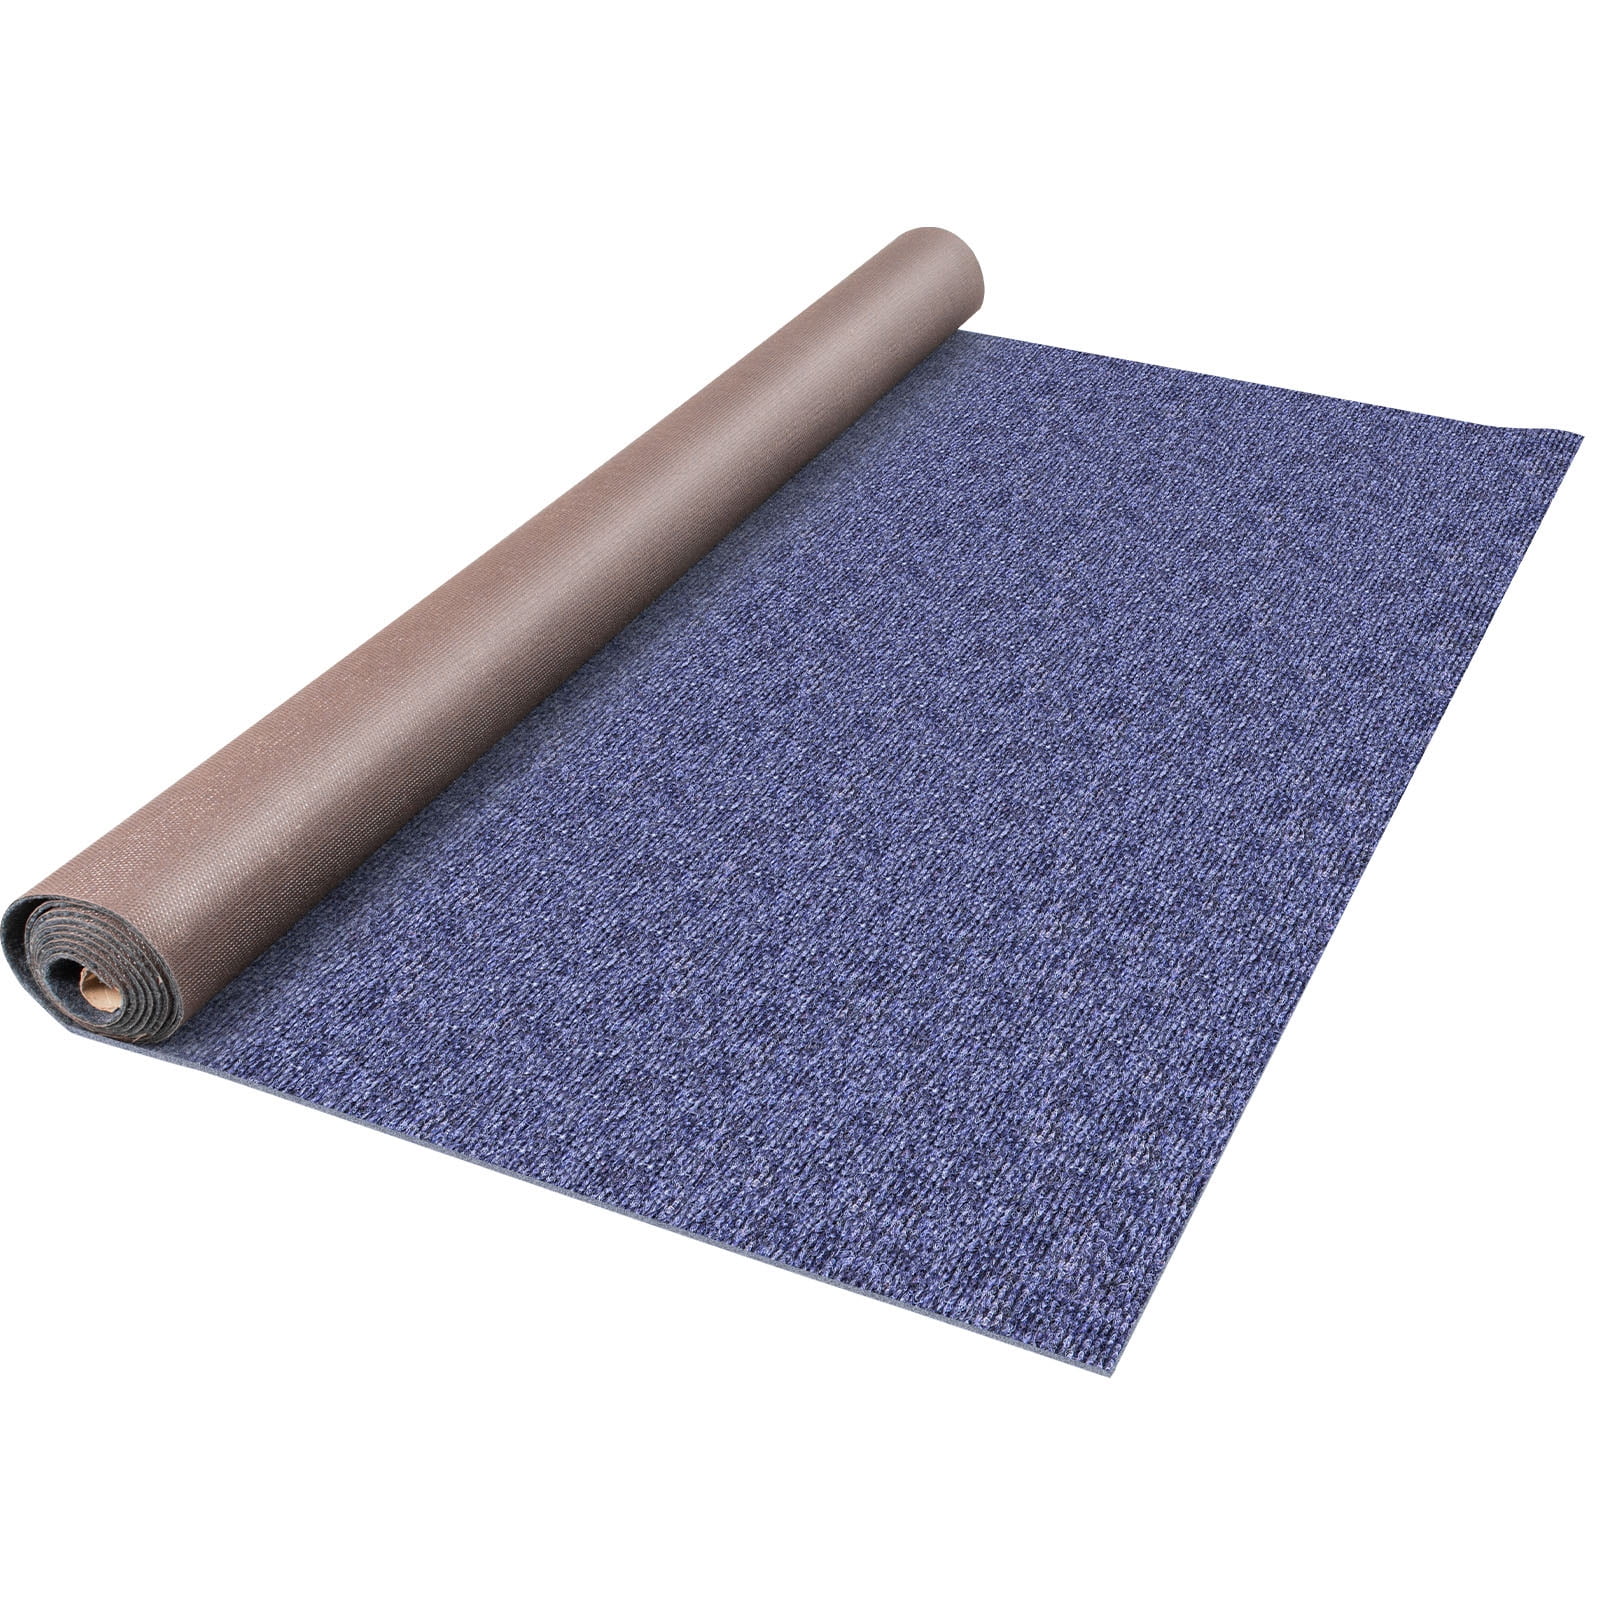 Instabind Outdoor Marine Carpet Binding (Navy)